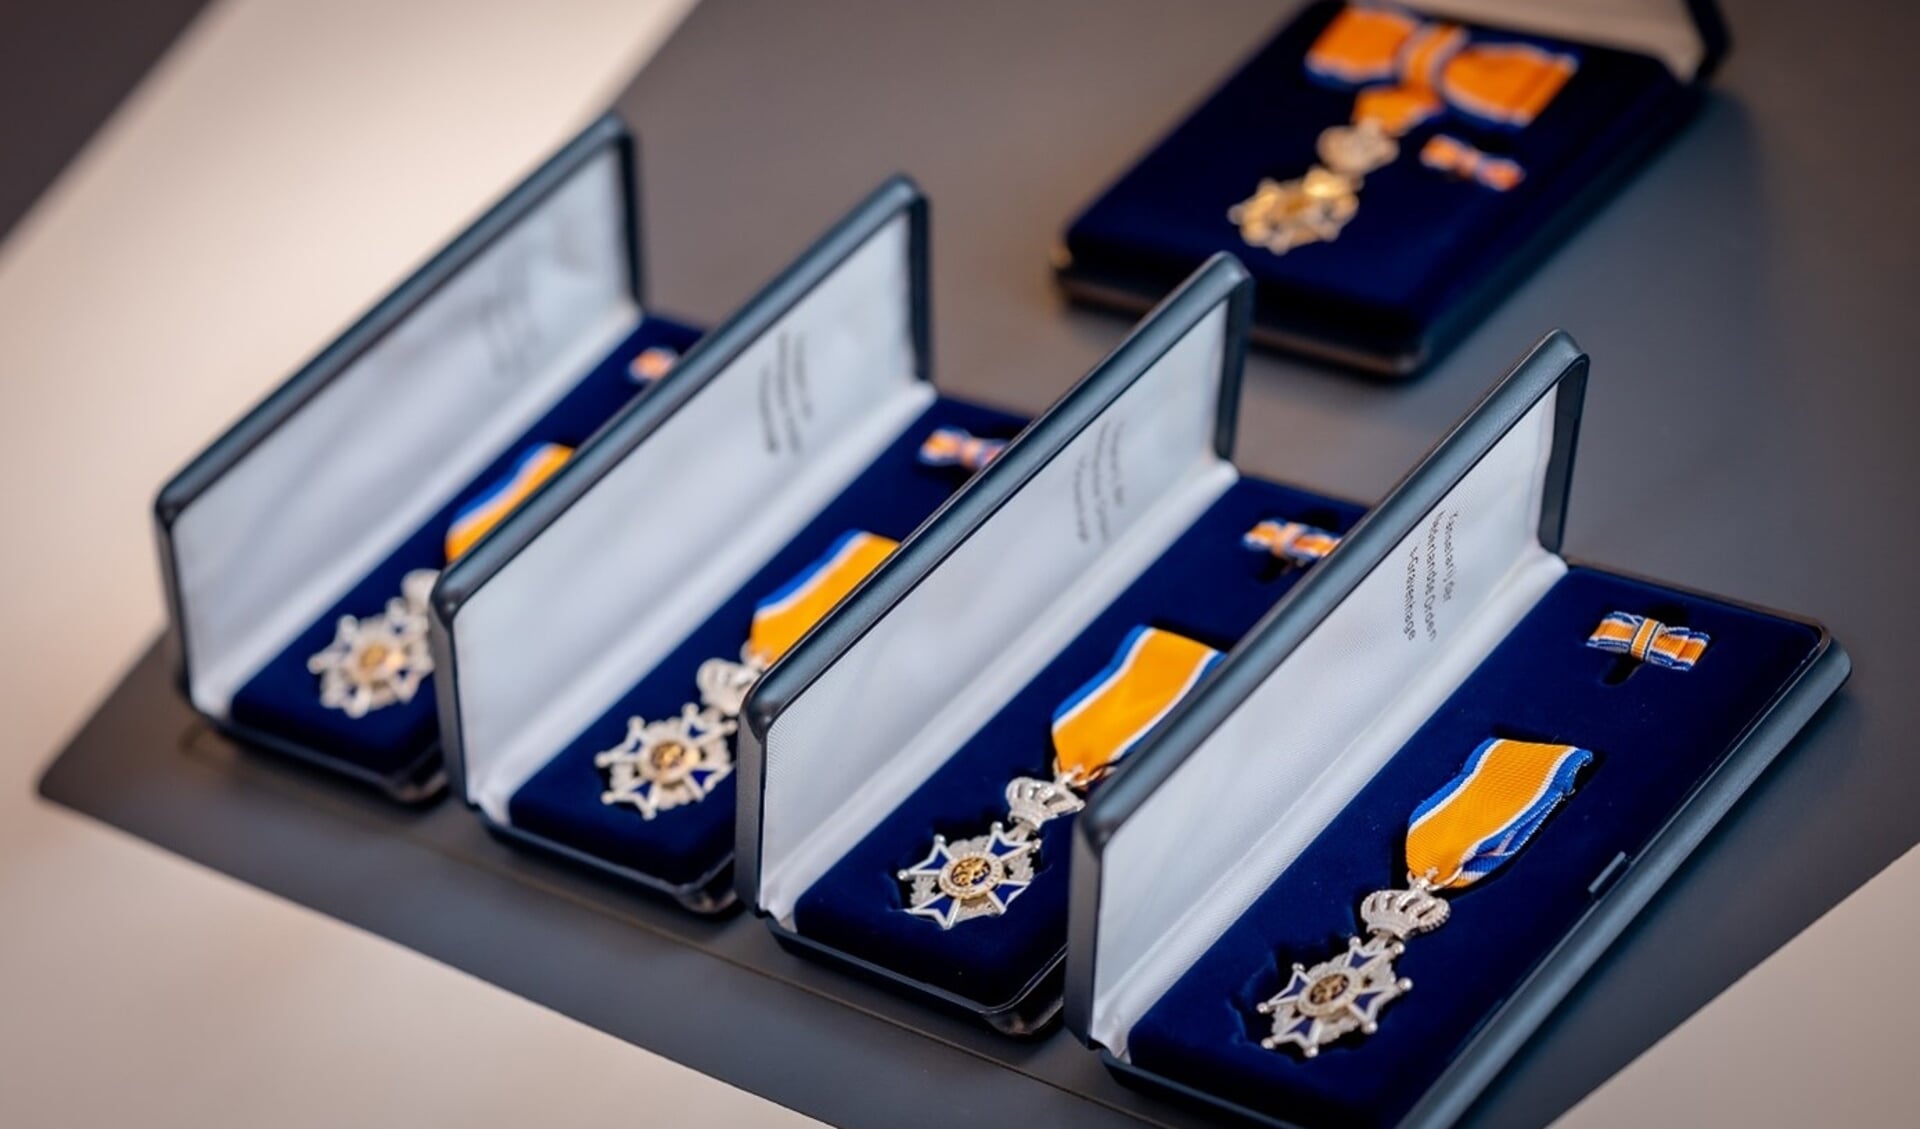 Tijdens de lintjesregen krijgen duizenden Nederlanders een koninklijke onderscheiding voor hun inzet – vaak als vrijwilliger – voor de maatschappij.